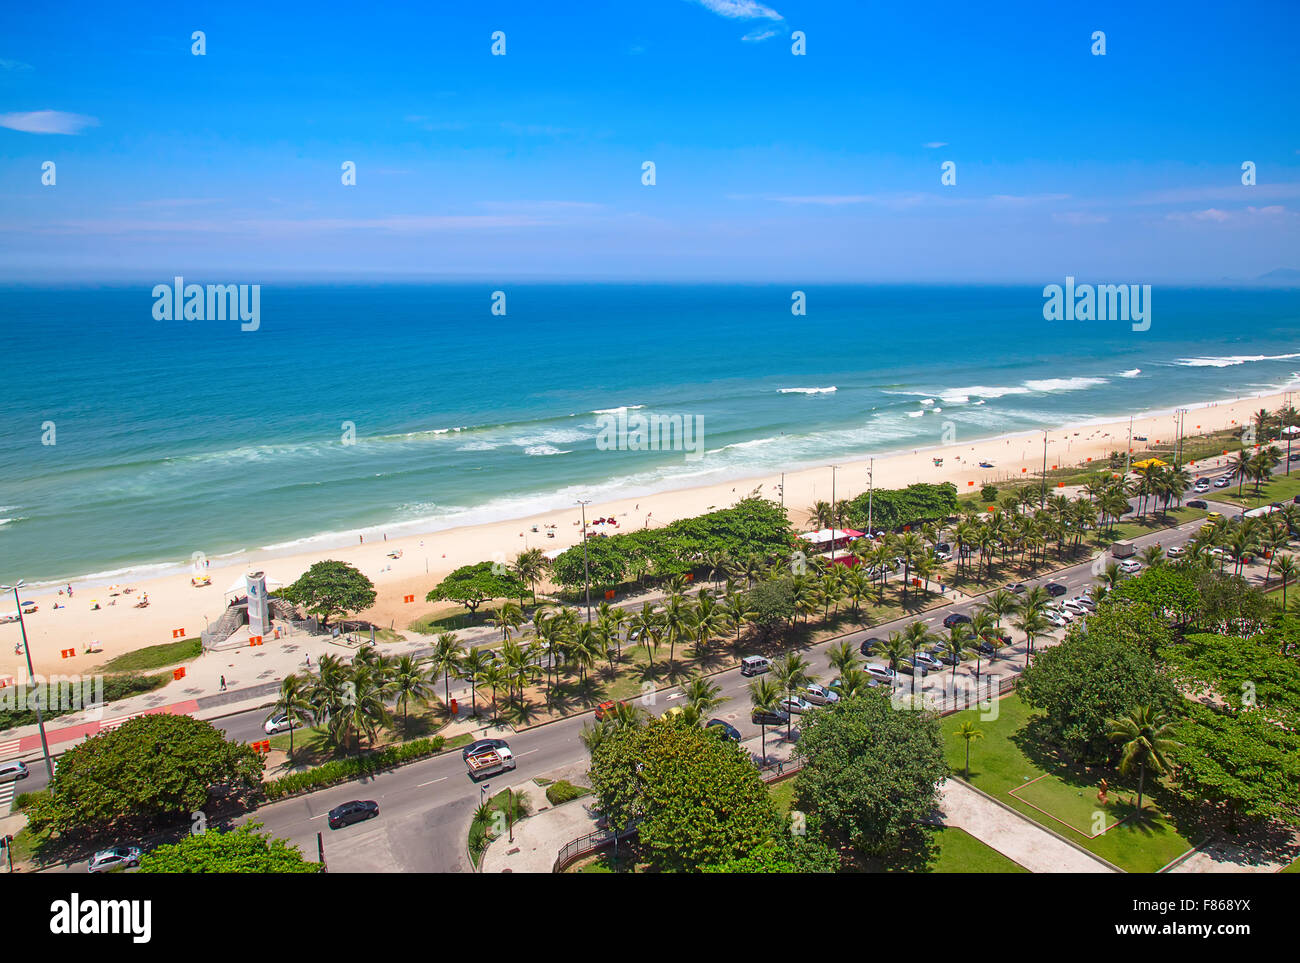 Famous Barra beach in Rio de Janeiro, Brasil Stock Photo